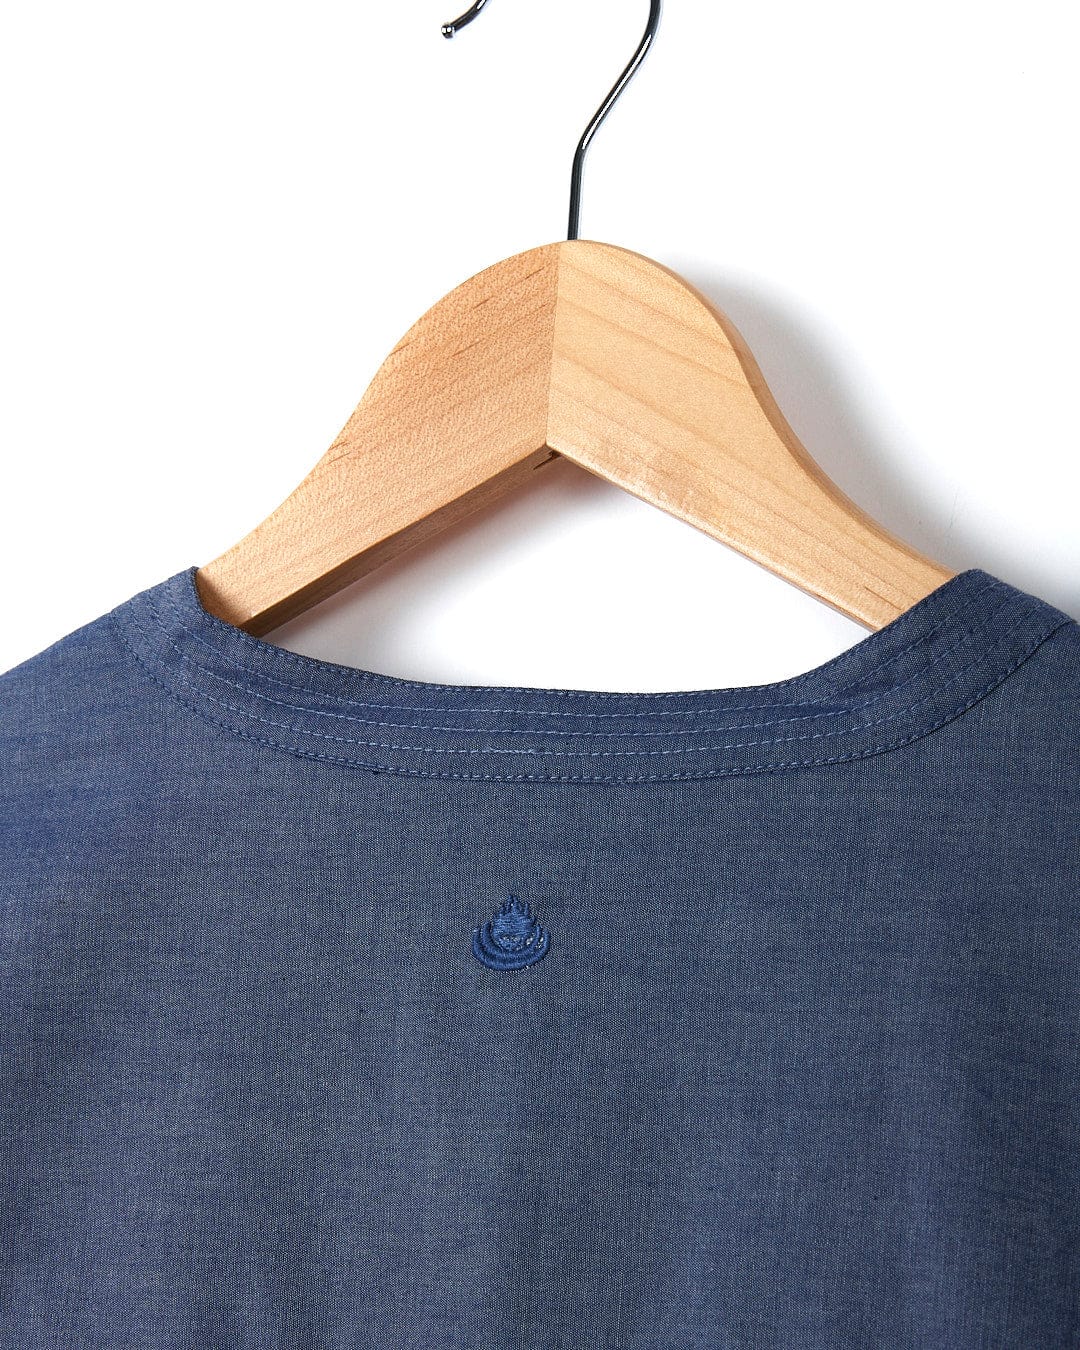 The back of a Saltrock Manina - Womens Beach Shirt - Blue hanging on a wooden hanger.